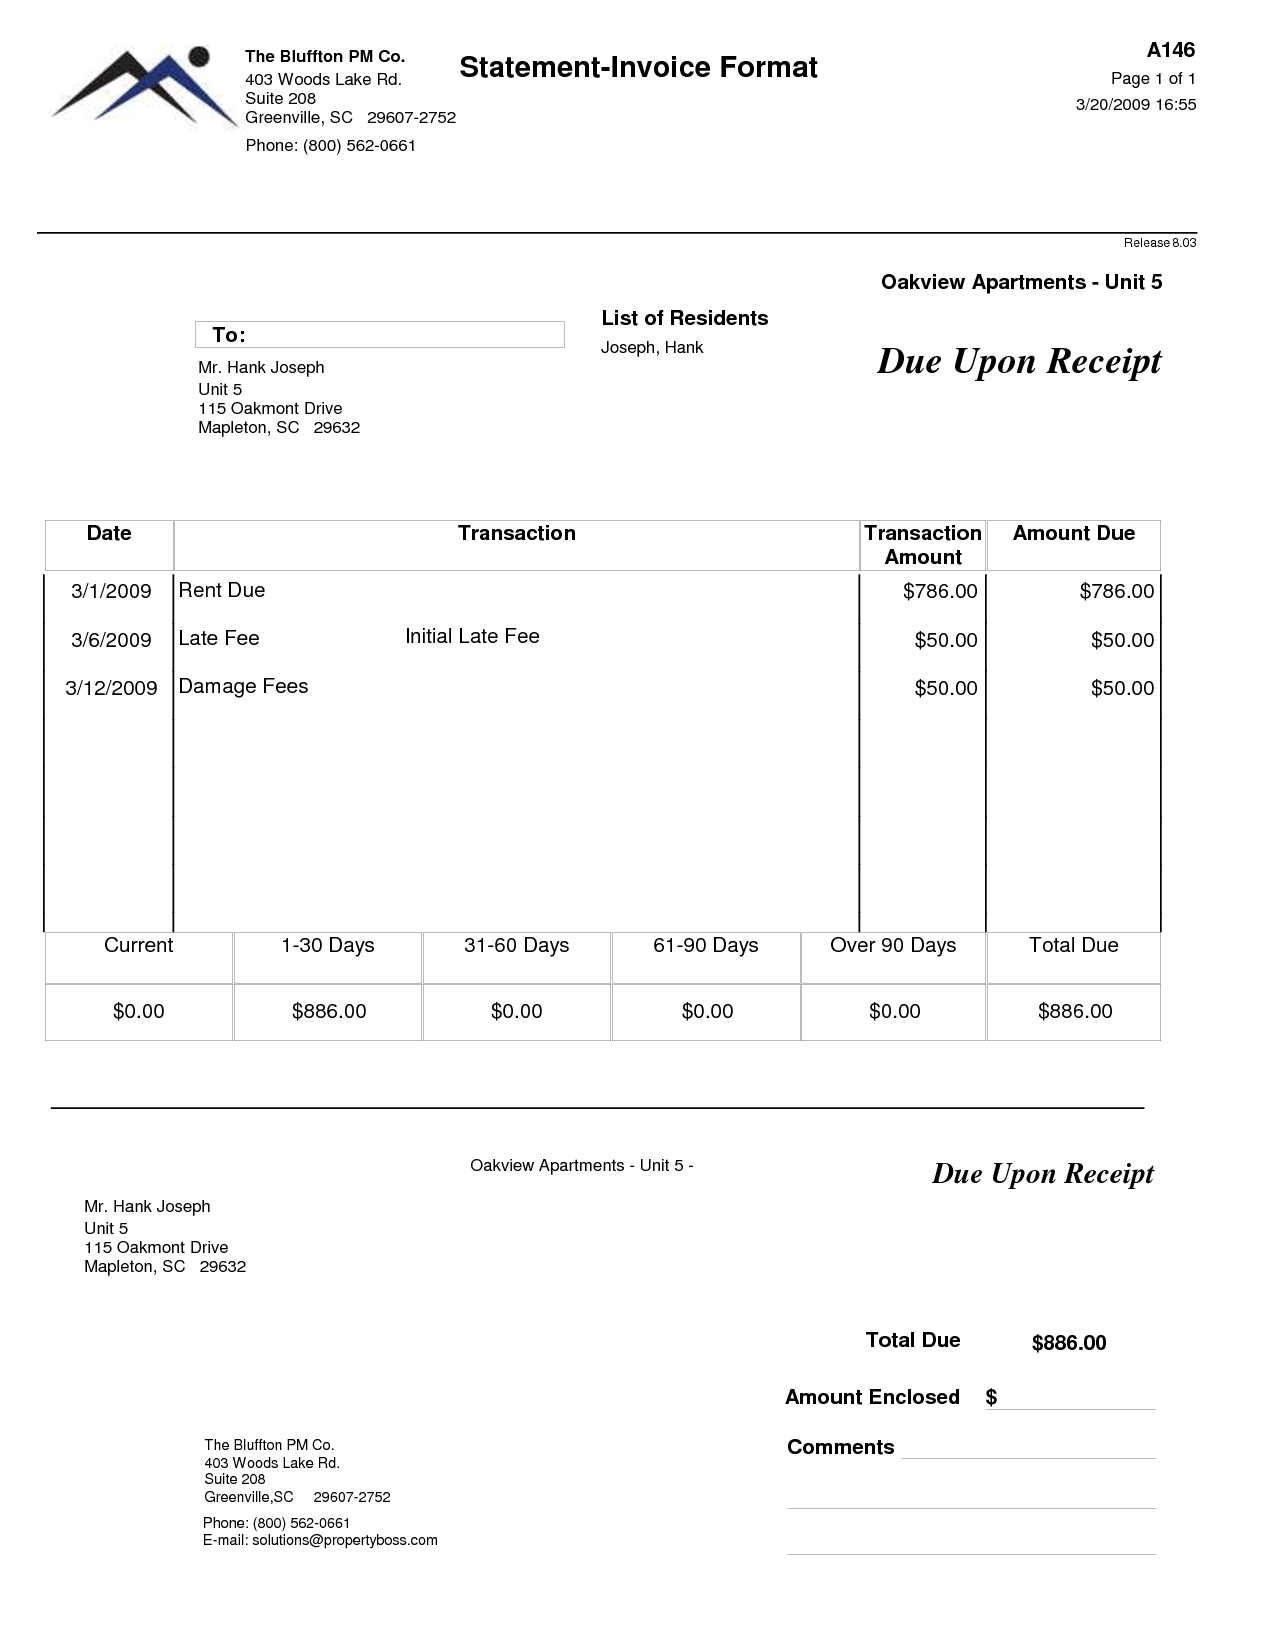 quickbooks invoice templates apartment rent invoice template rent invoice template free